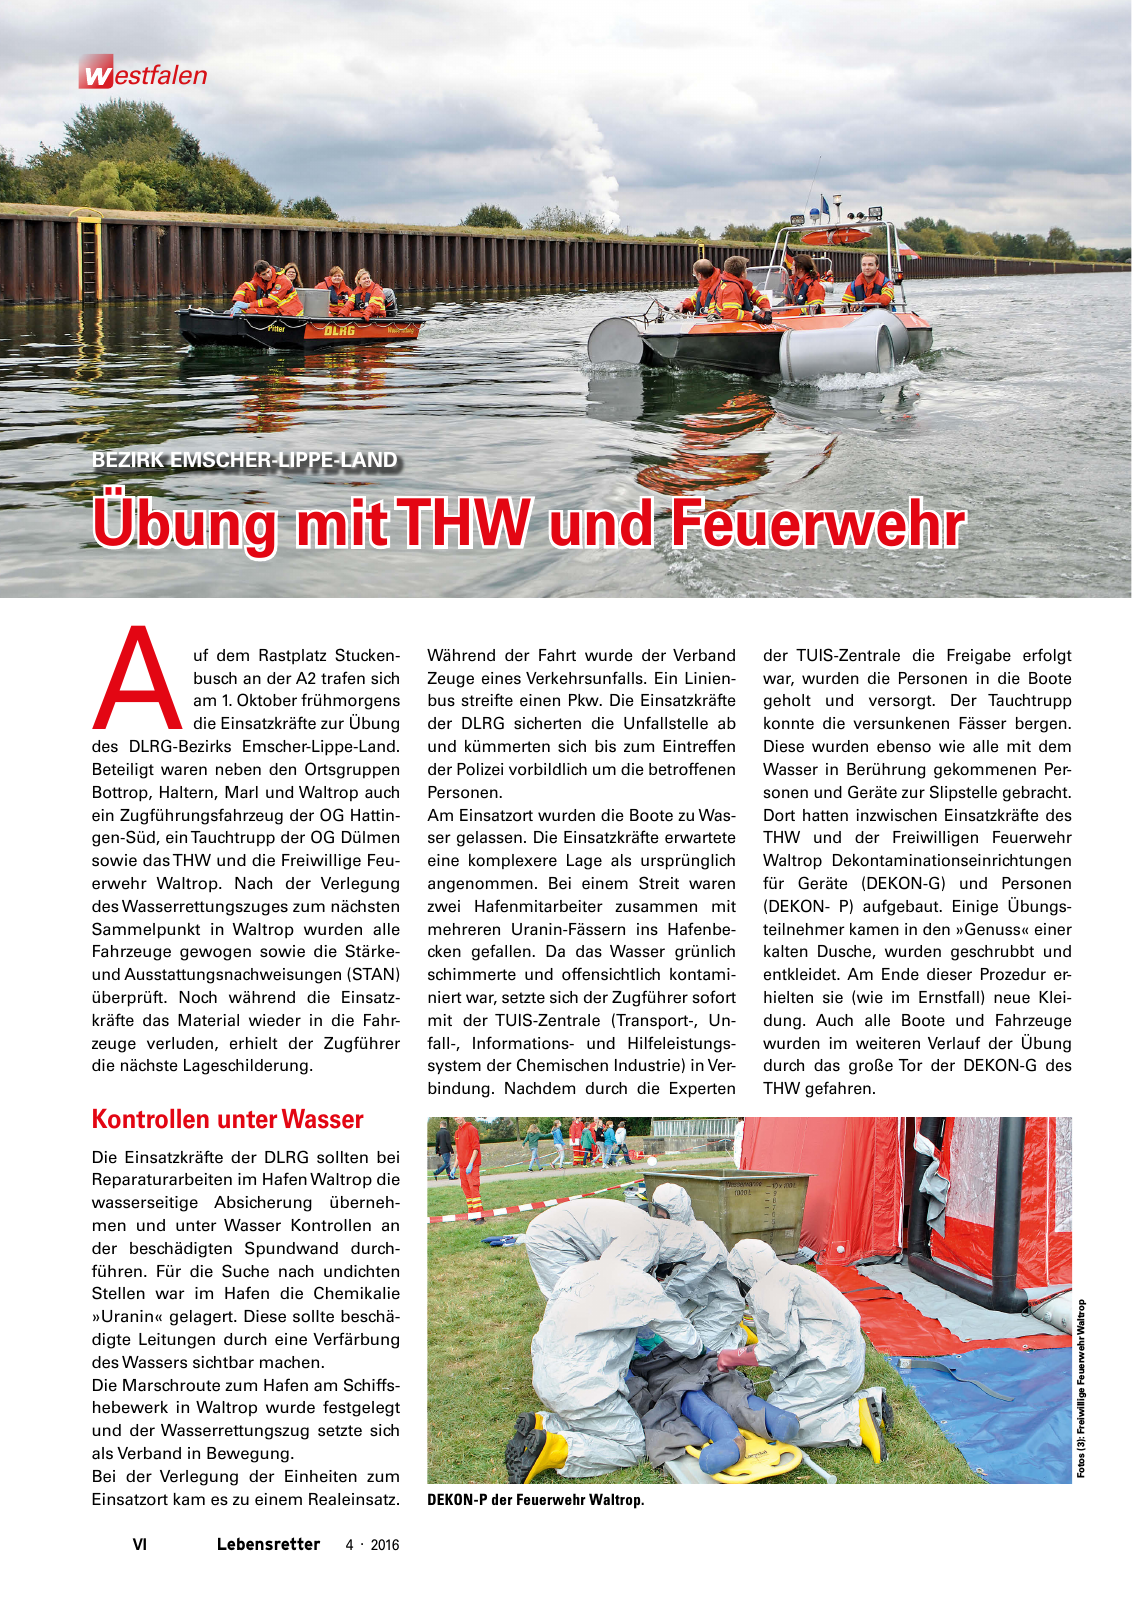 Vorschau Lebensretter 4/2016 - Regionalausgabe Westfalen Seite 8